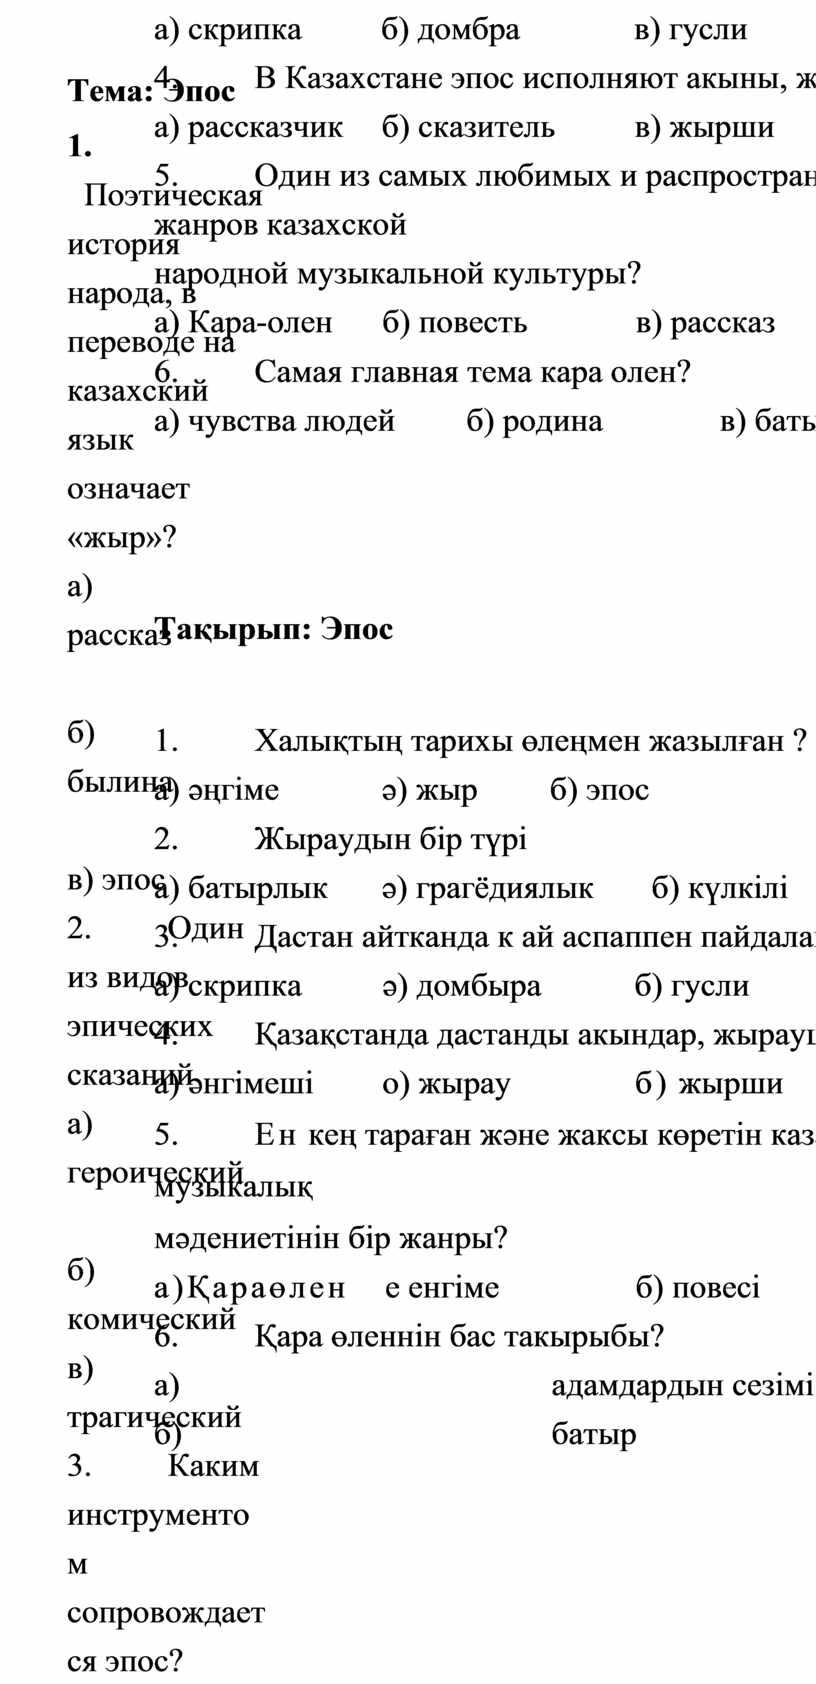 Тема: Э пос 1. Поэтическая история народа, в переводе на казахский язык означает «жыр»? а) рассказ б) былина в) эпос 2